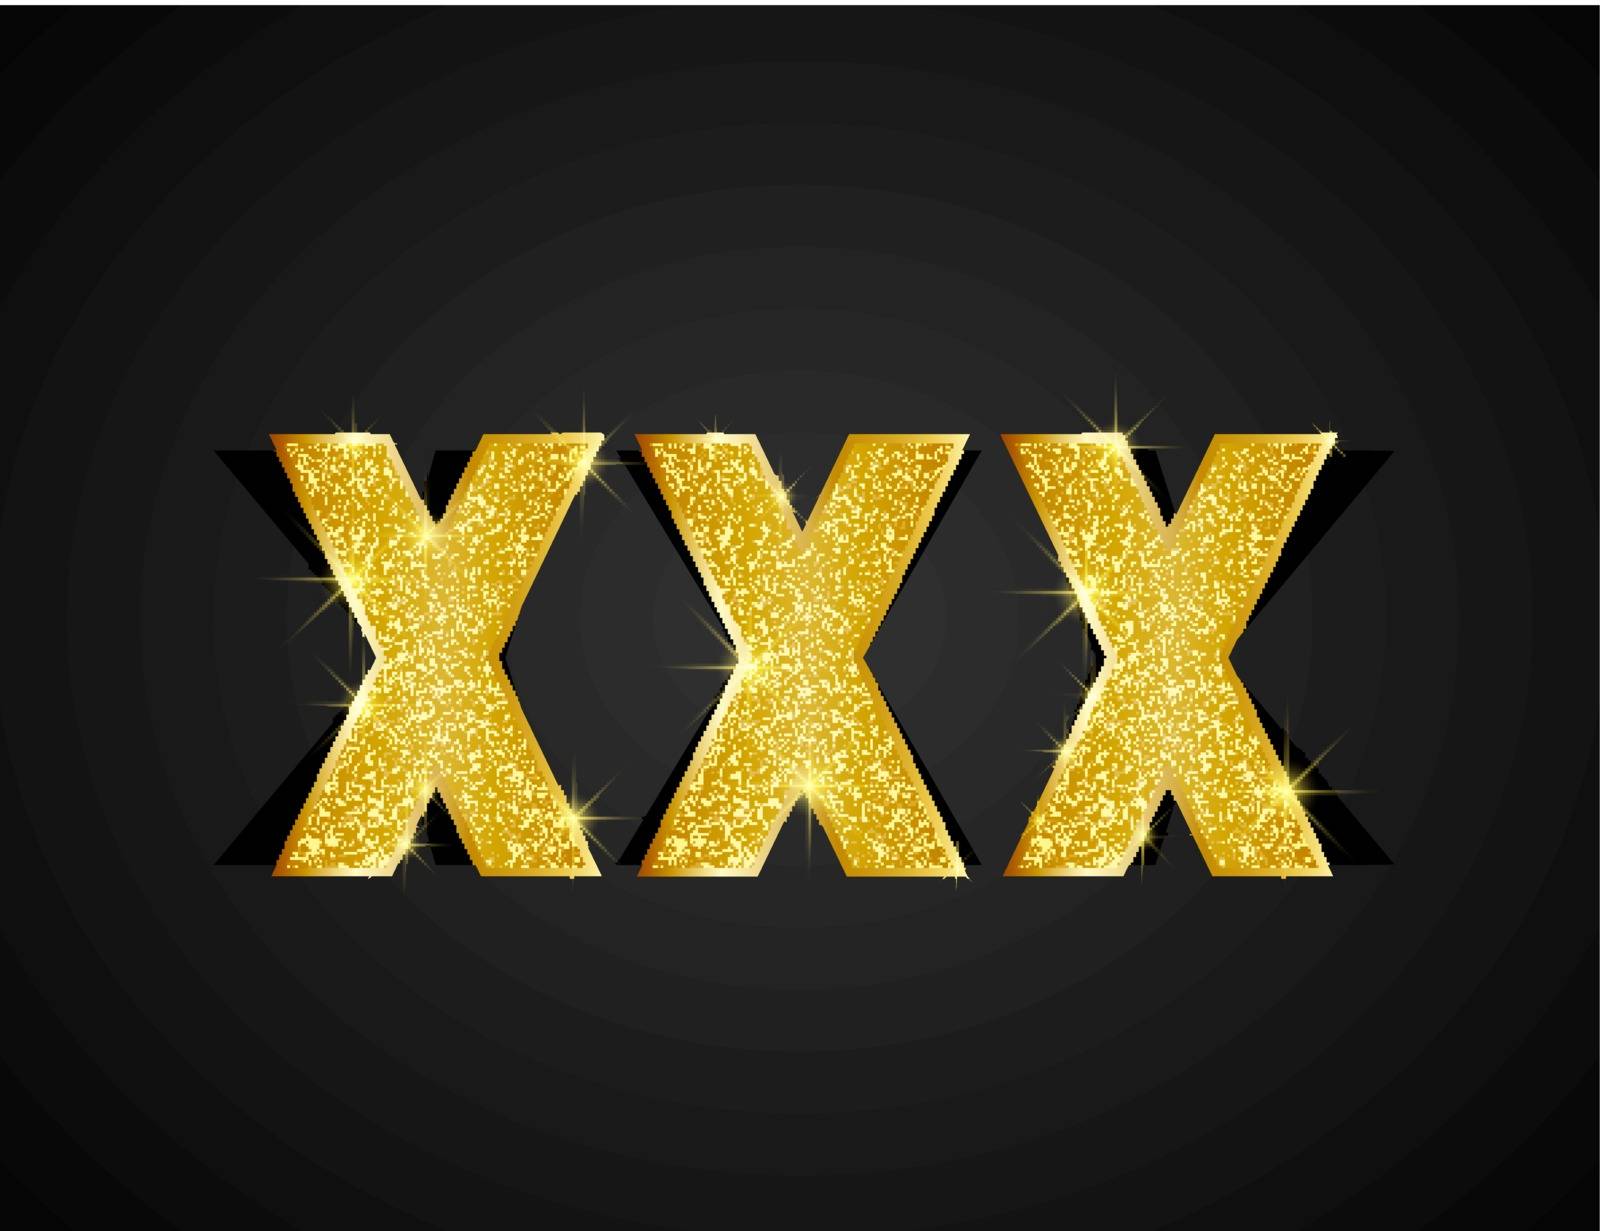 Gold texture XXX text on black background